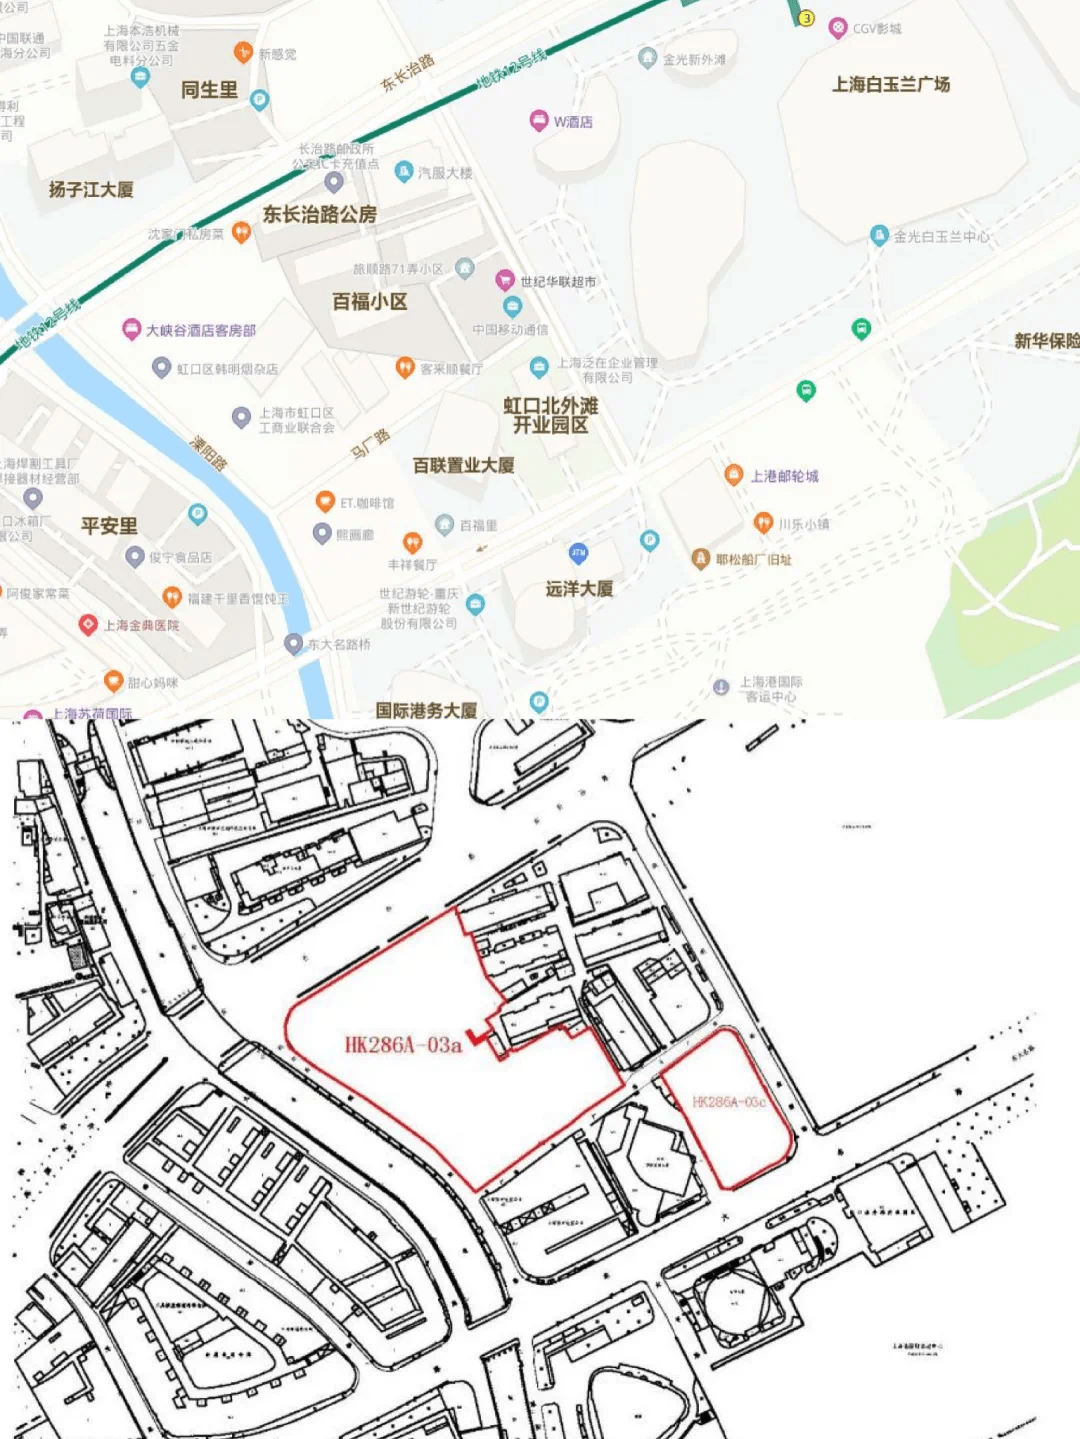 上海市虹口区挂牌一幅编号为202016301的地块,即北外滩街道63街坊hk